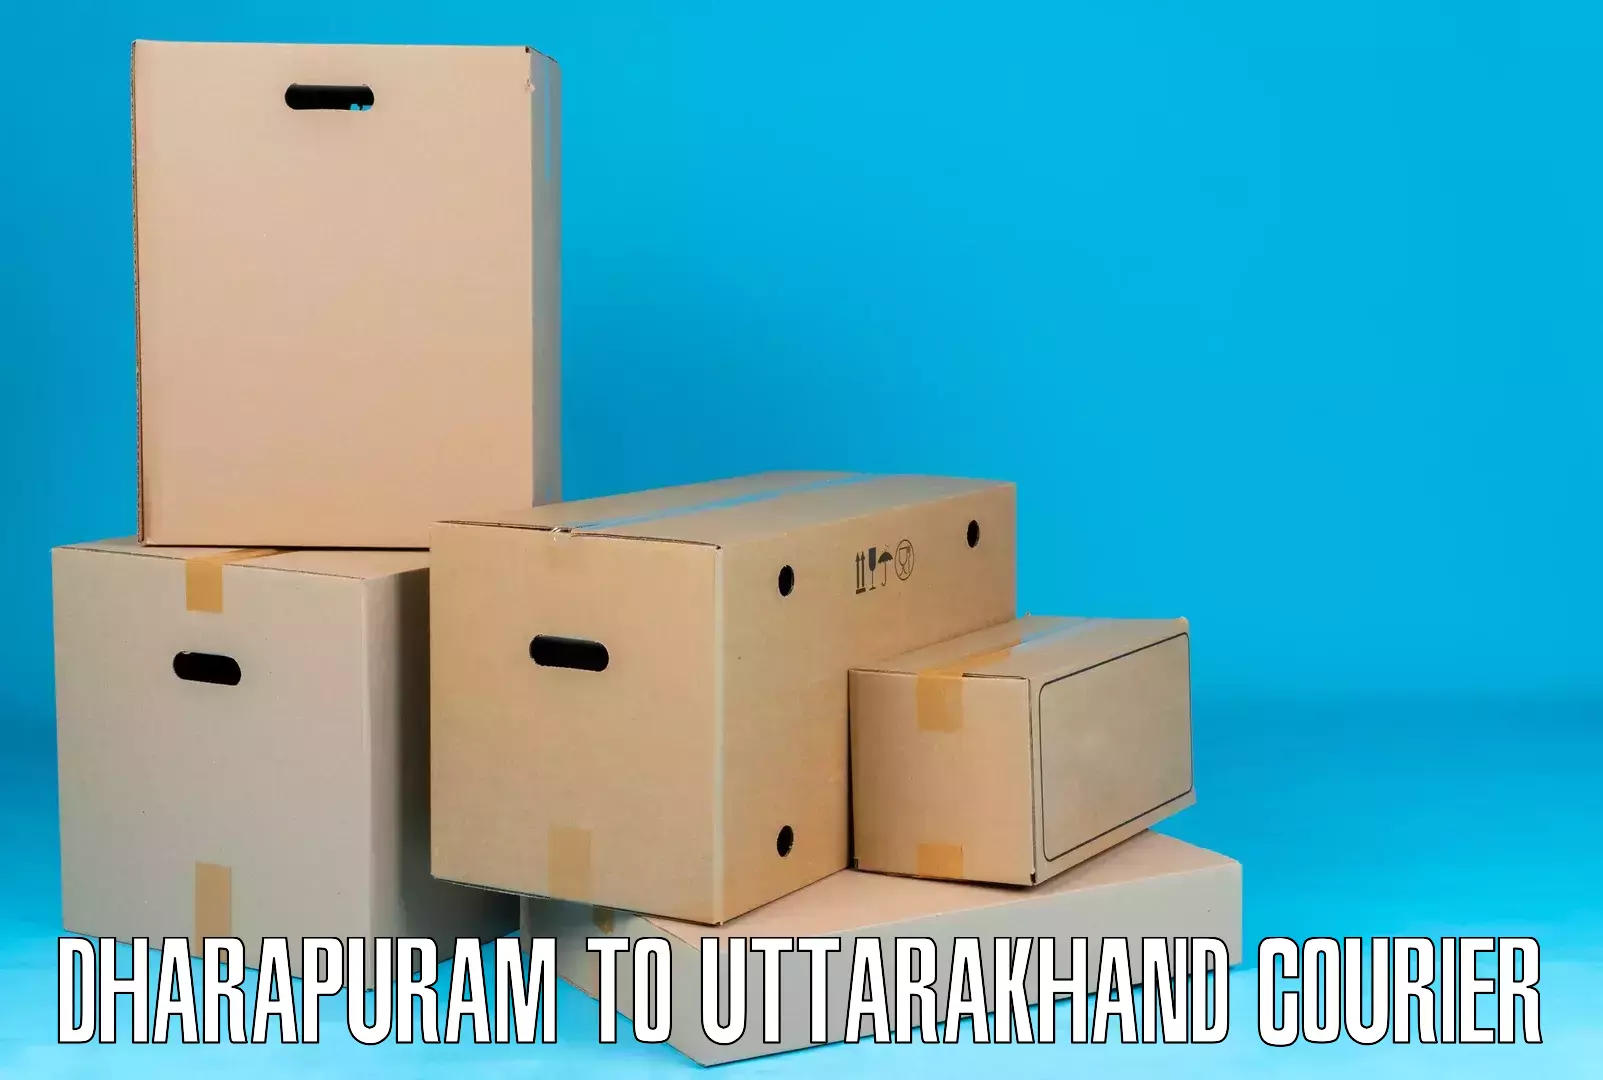 Bulk shipment Dharapuram to Pithoragarh